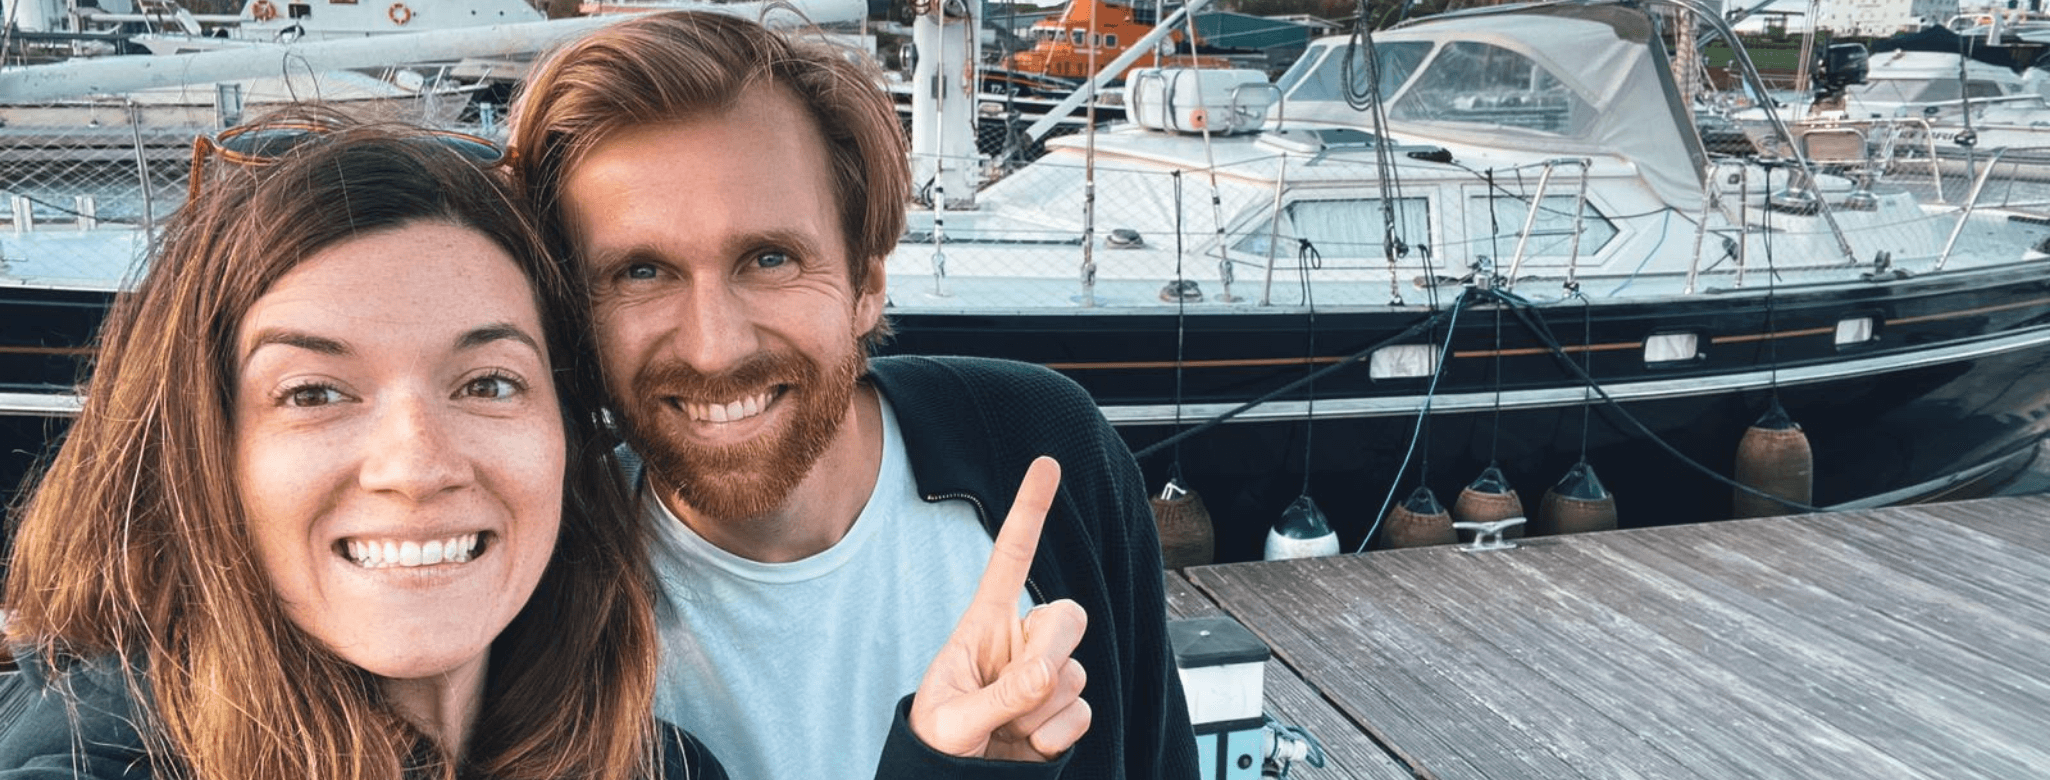 Leben An Bord Interview Mit Jan Jessie Von Sailing Adhara